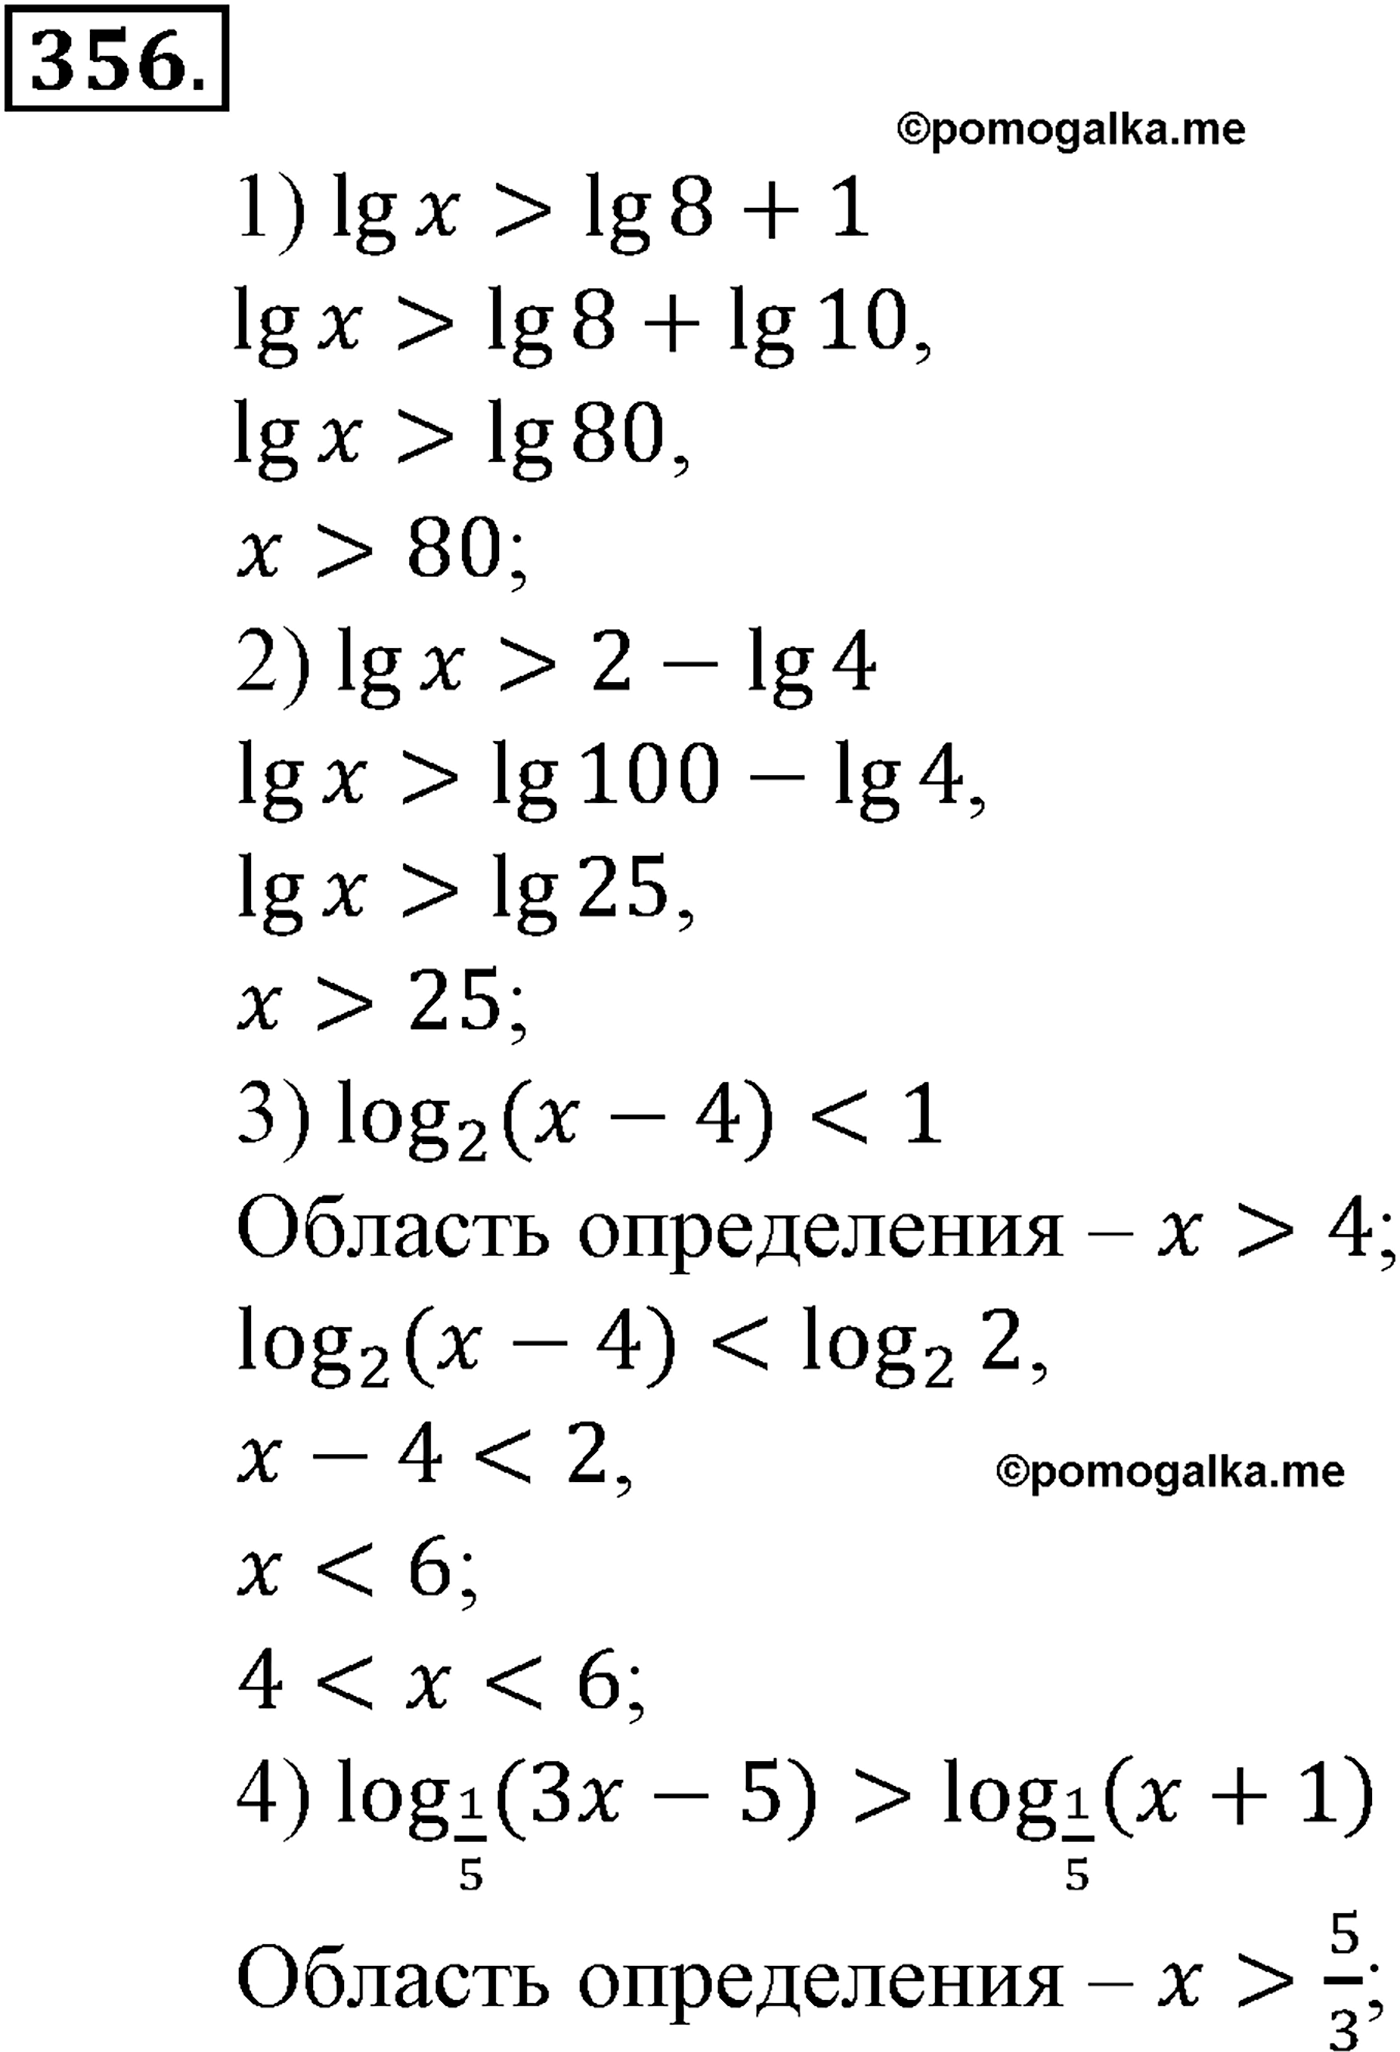 разбор задачи №356 по алгебре за 10-11 класс из учебника Алимова, Колягина